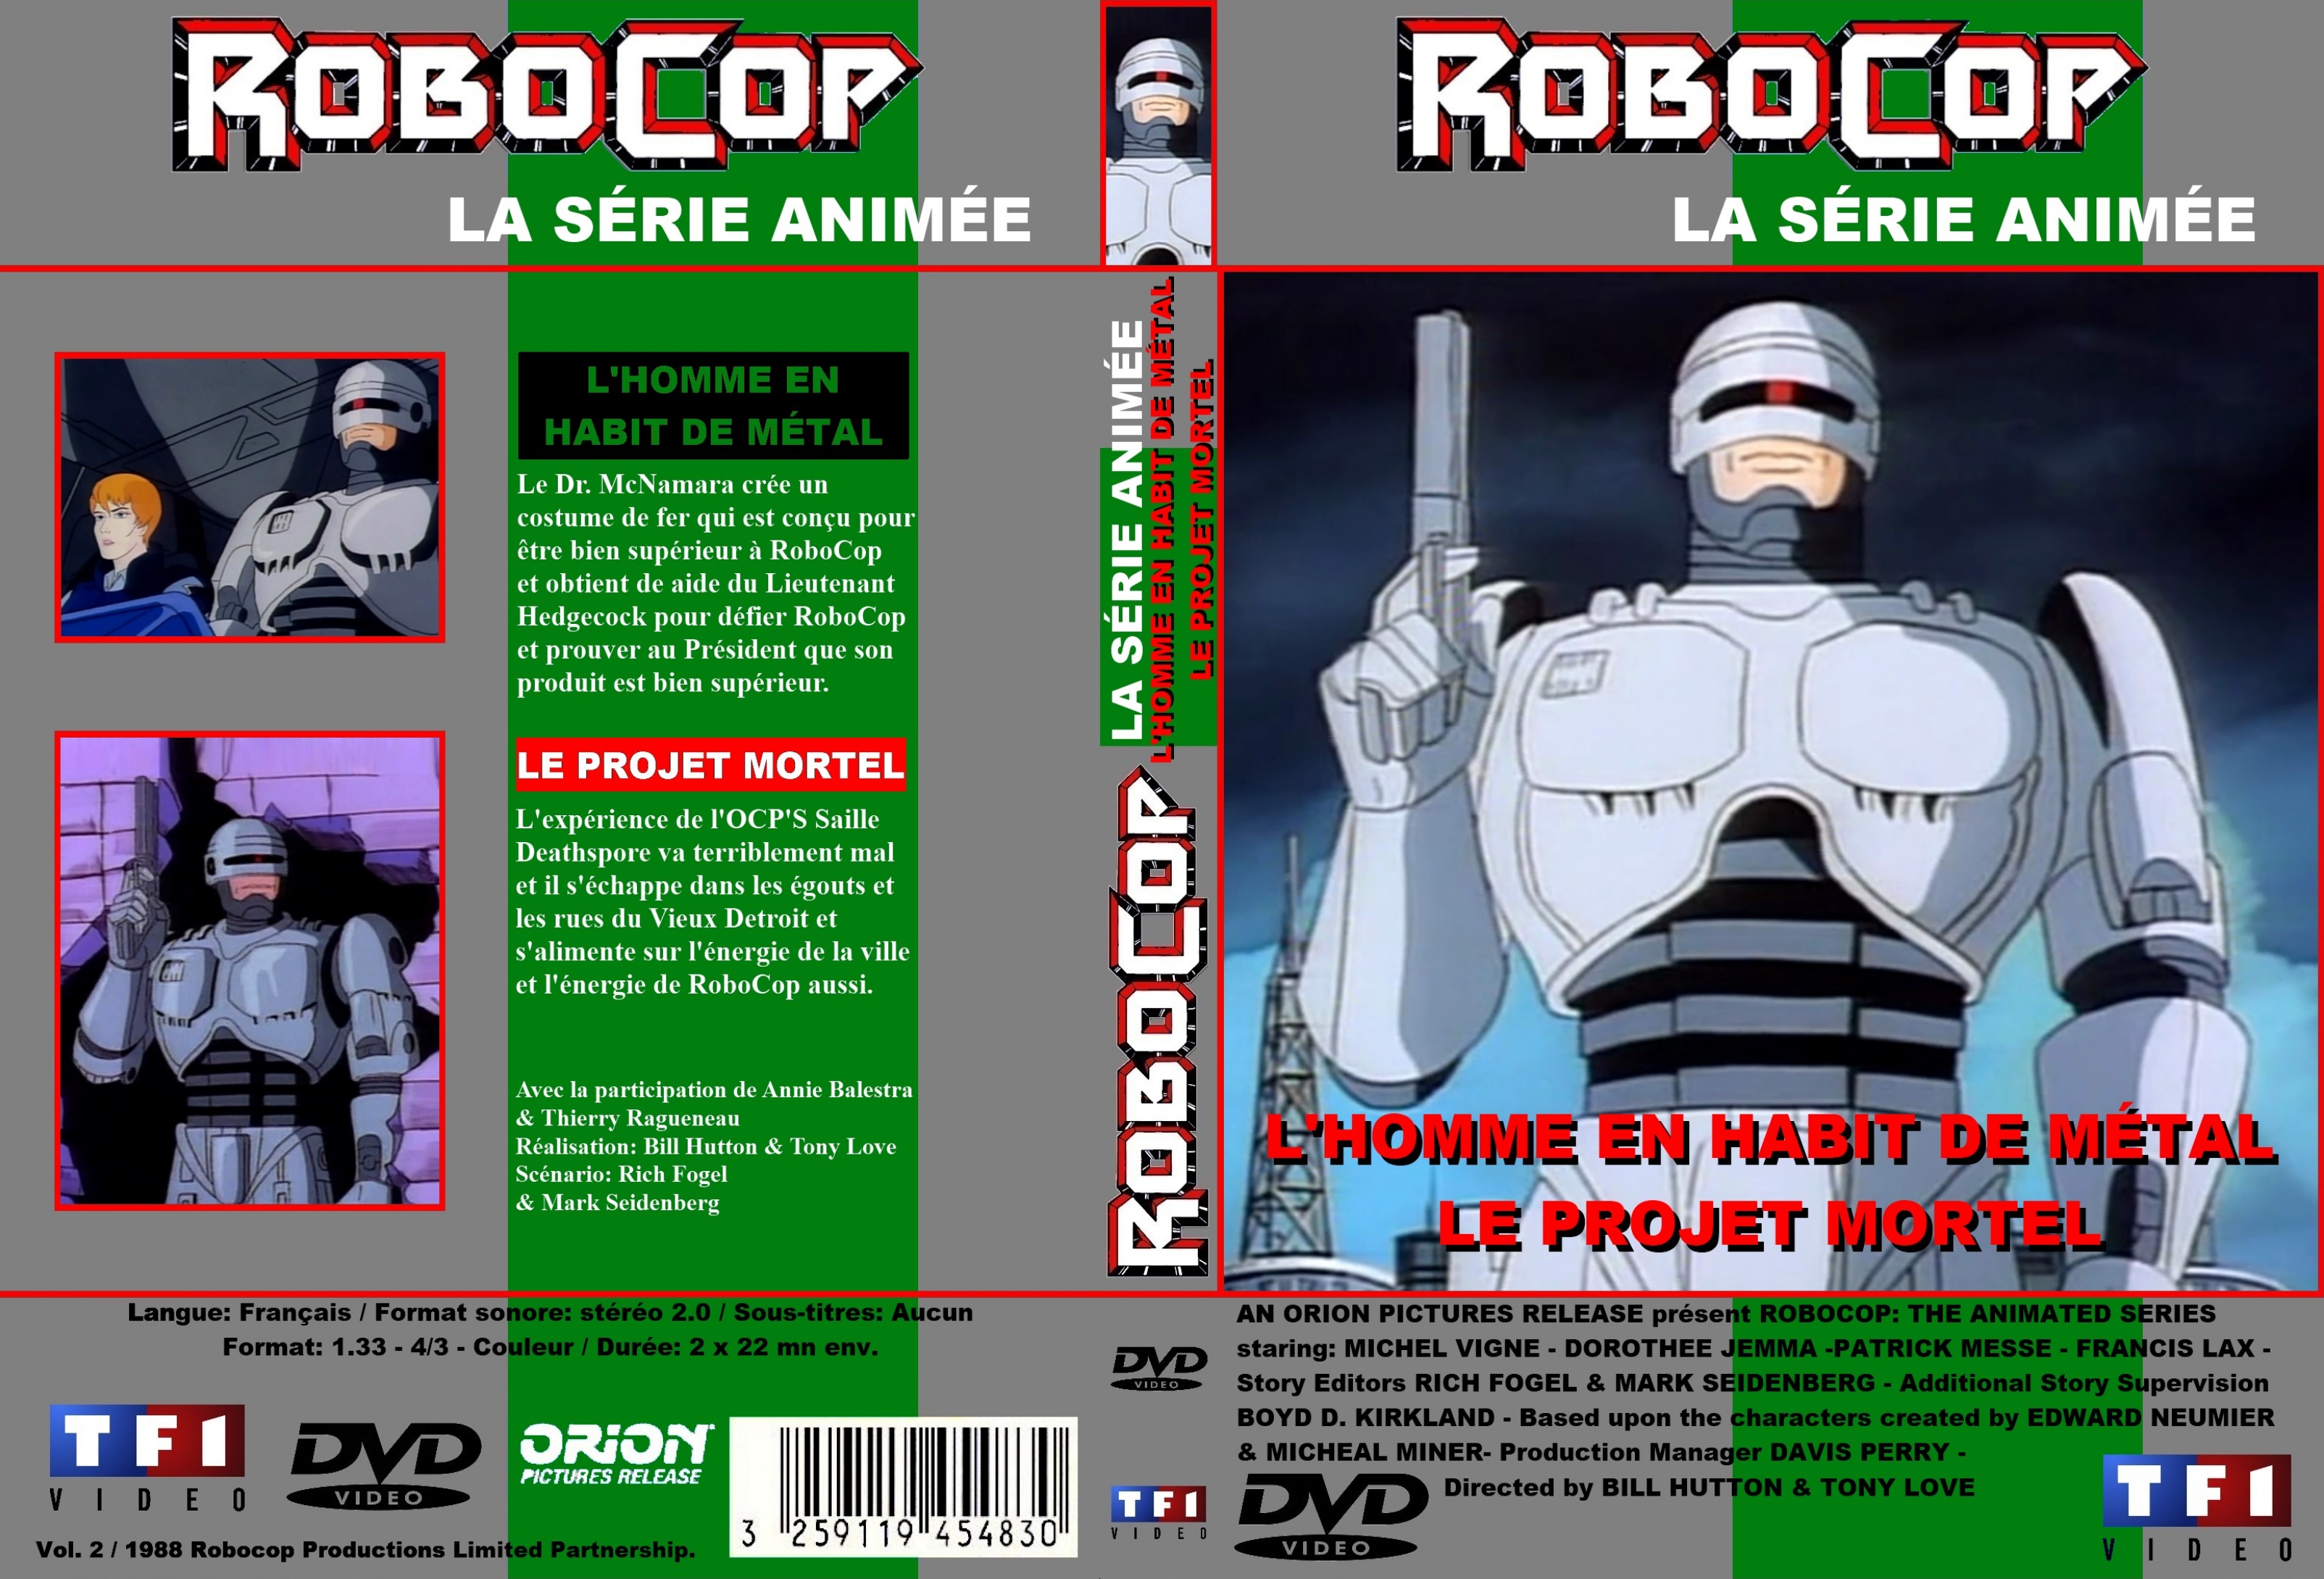 Jaquette DVD Robocop (Srie anime 1988) DVD 2 custom